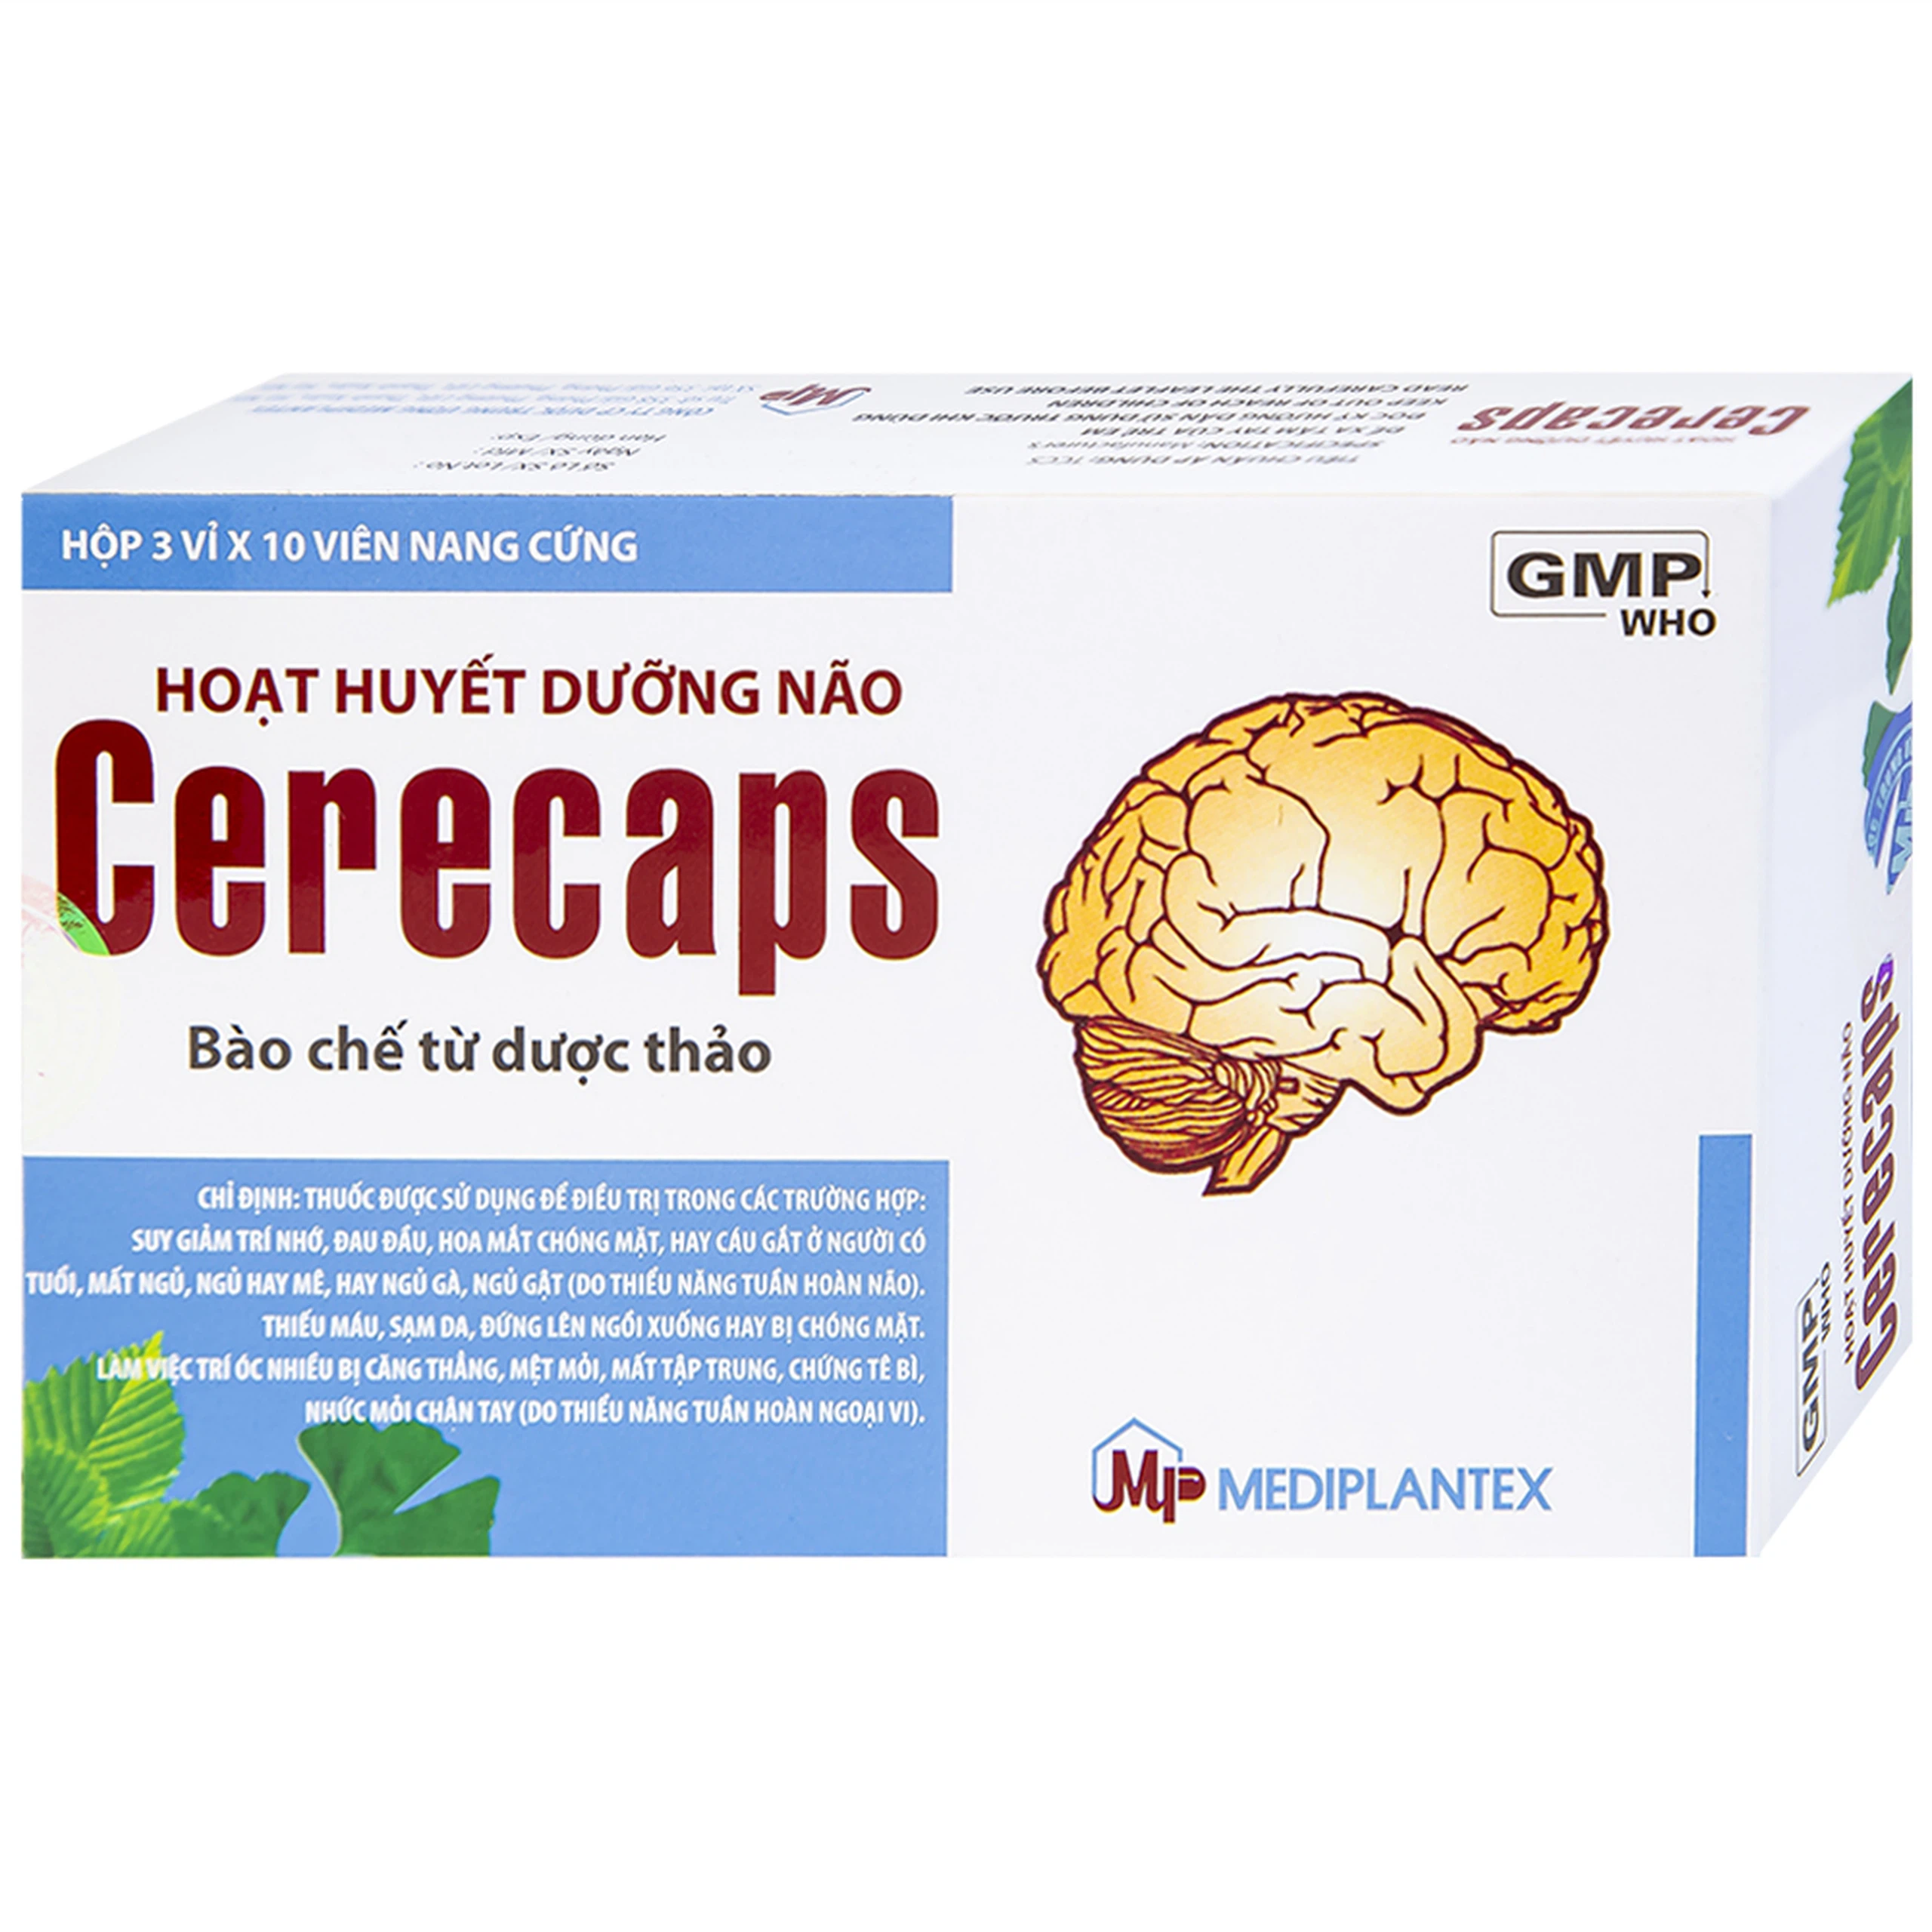 Hoạt huyết dưỡng não Cerecaps Mediplantex điều trị suy giảm trí nhớ, đau đầu (3 vỉ x 10 viên)